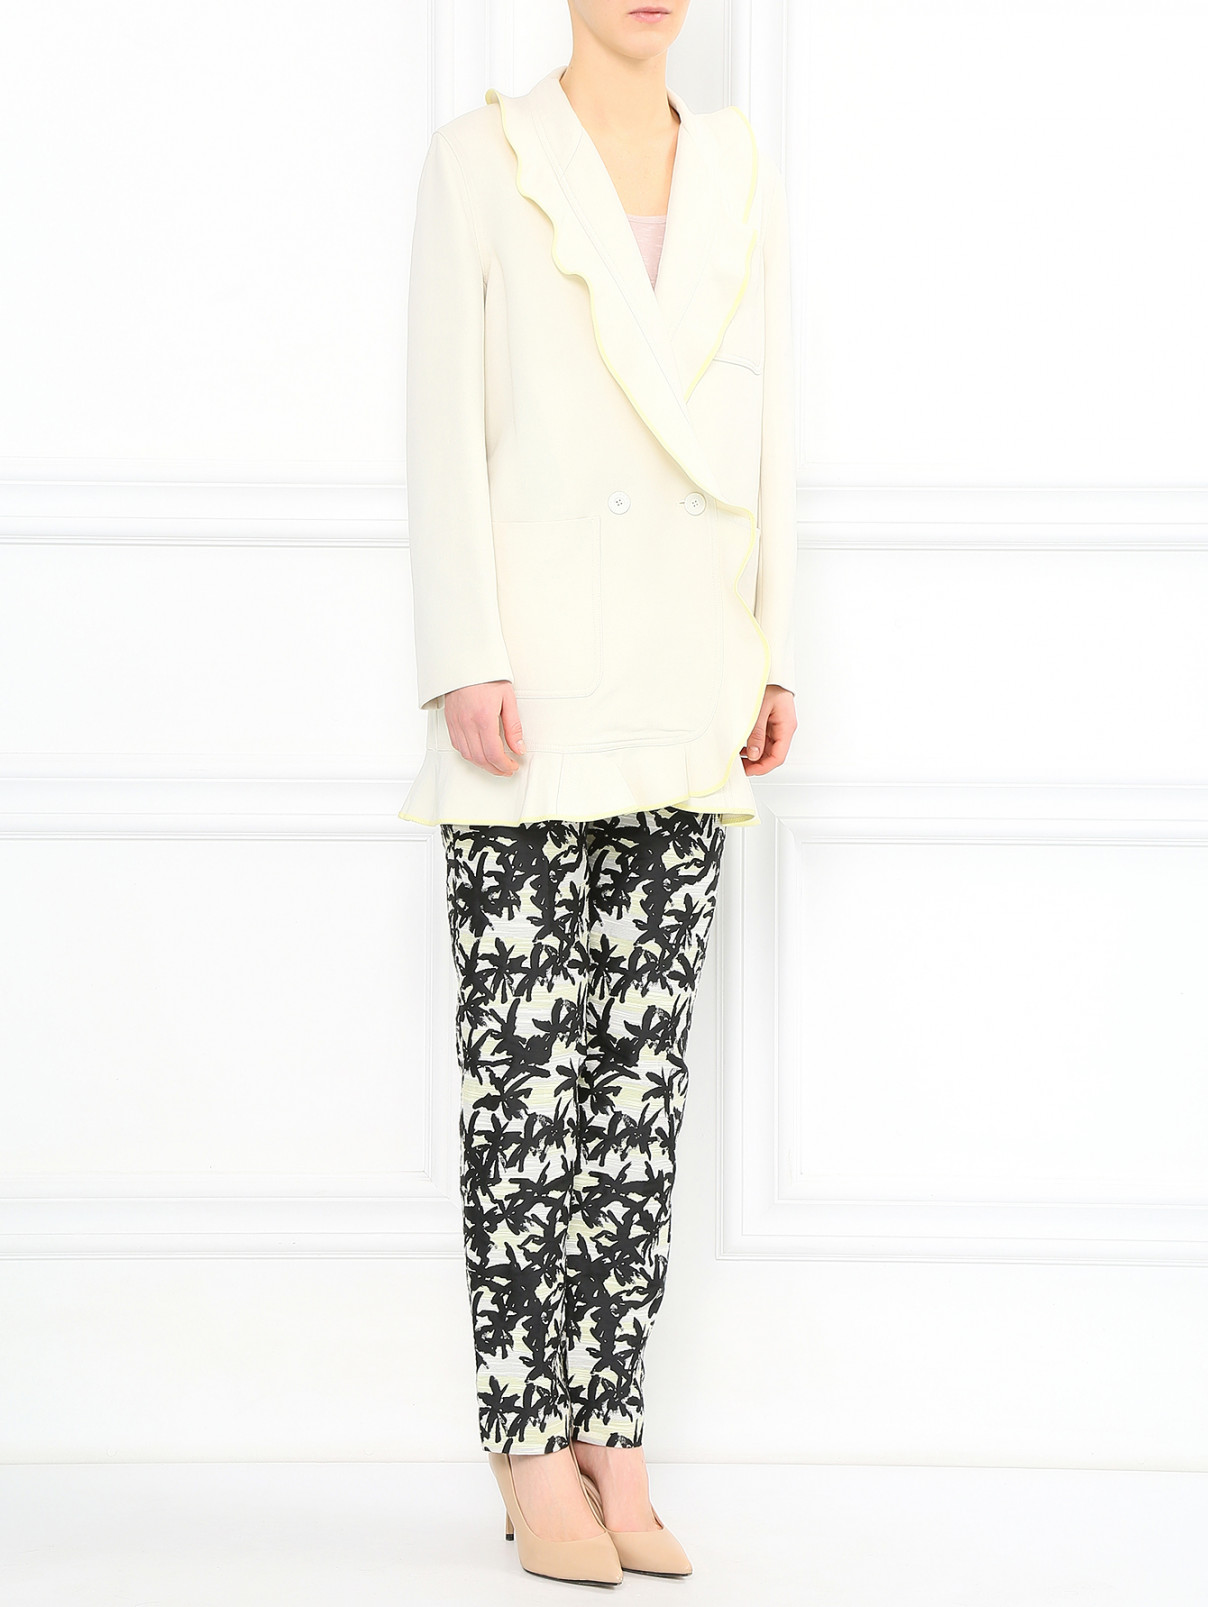 Пальто из смешанной шерсти с контрастной отделкой Kenzo  –  Модель Общий вид  – Цвет:  Белый